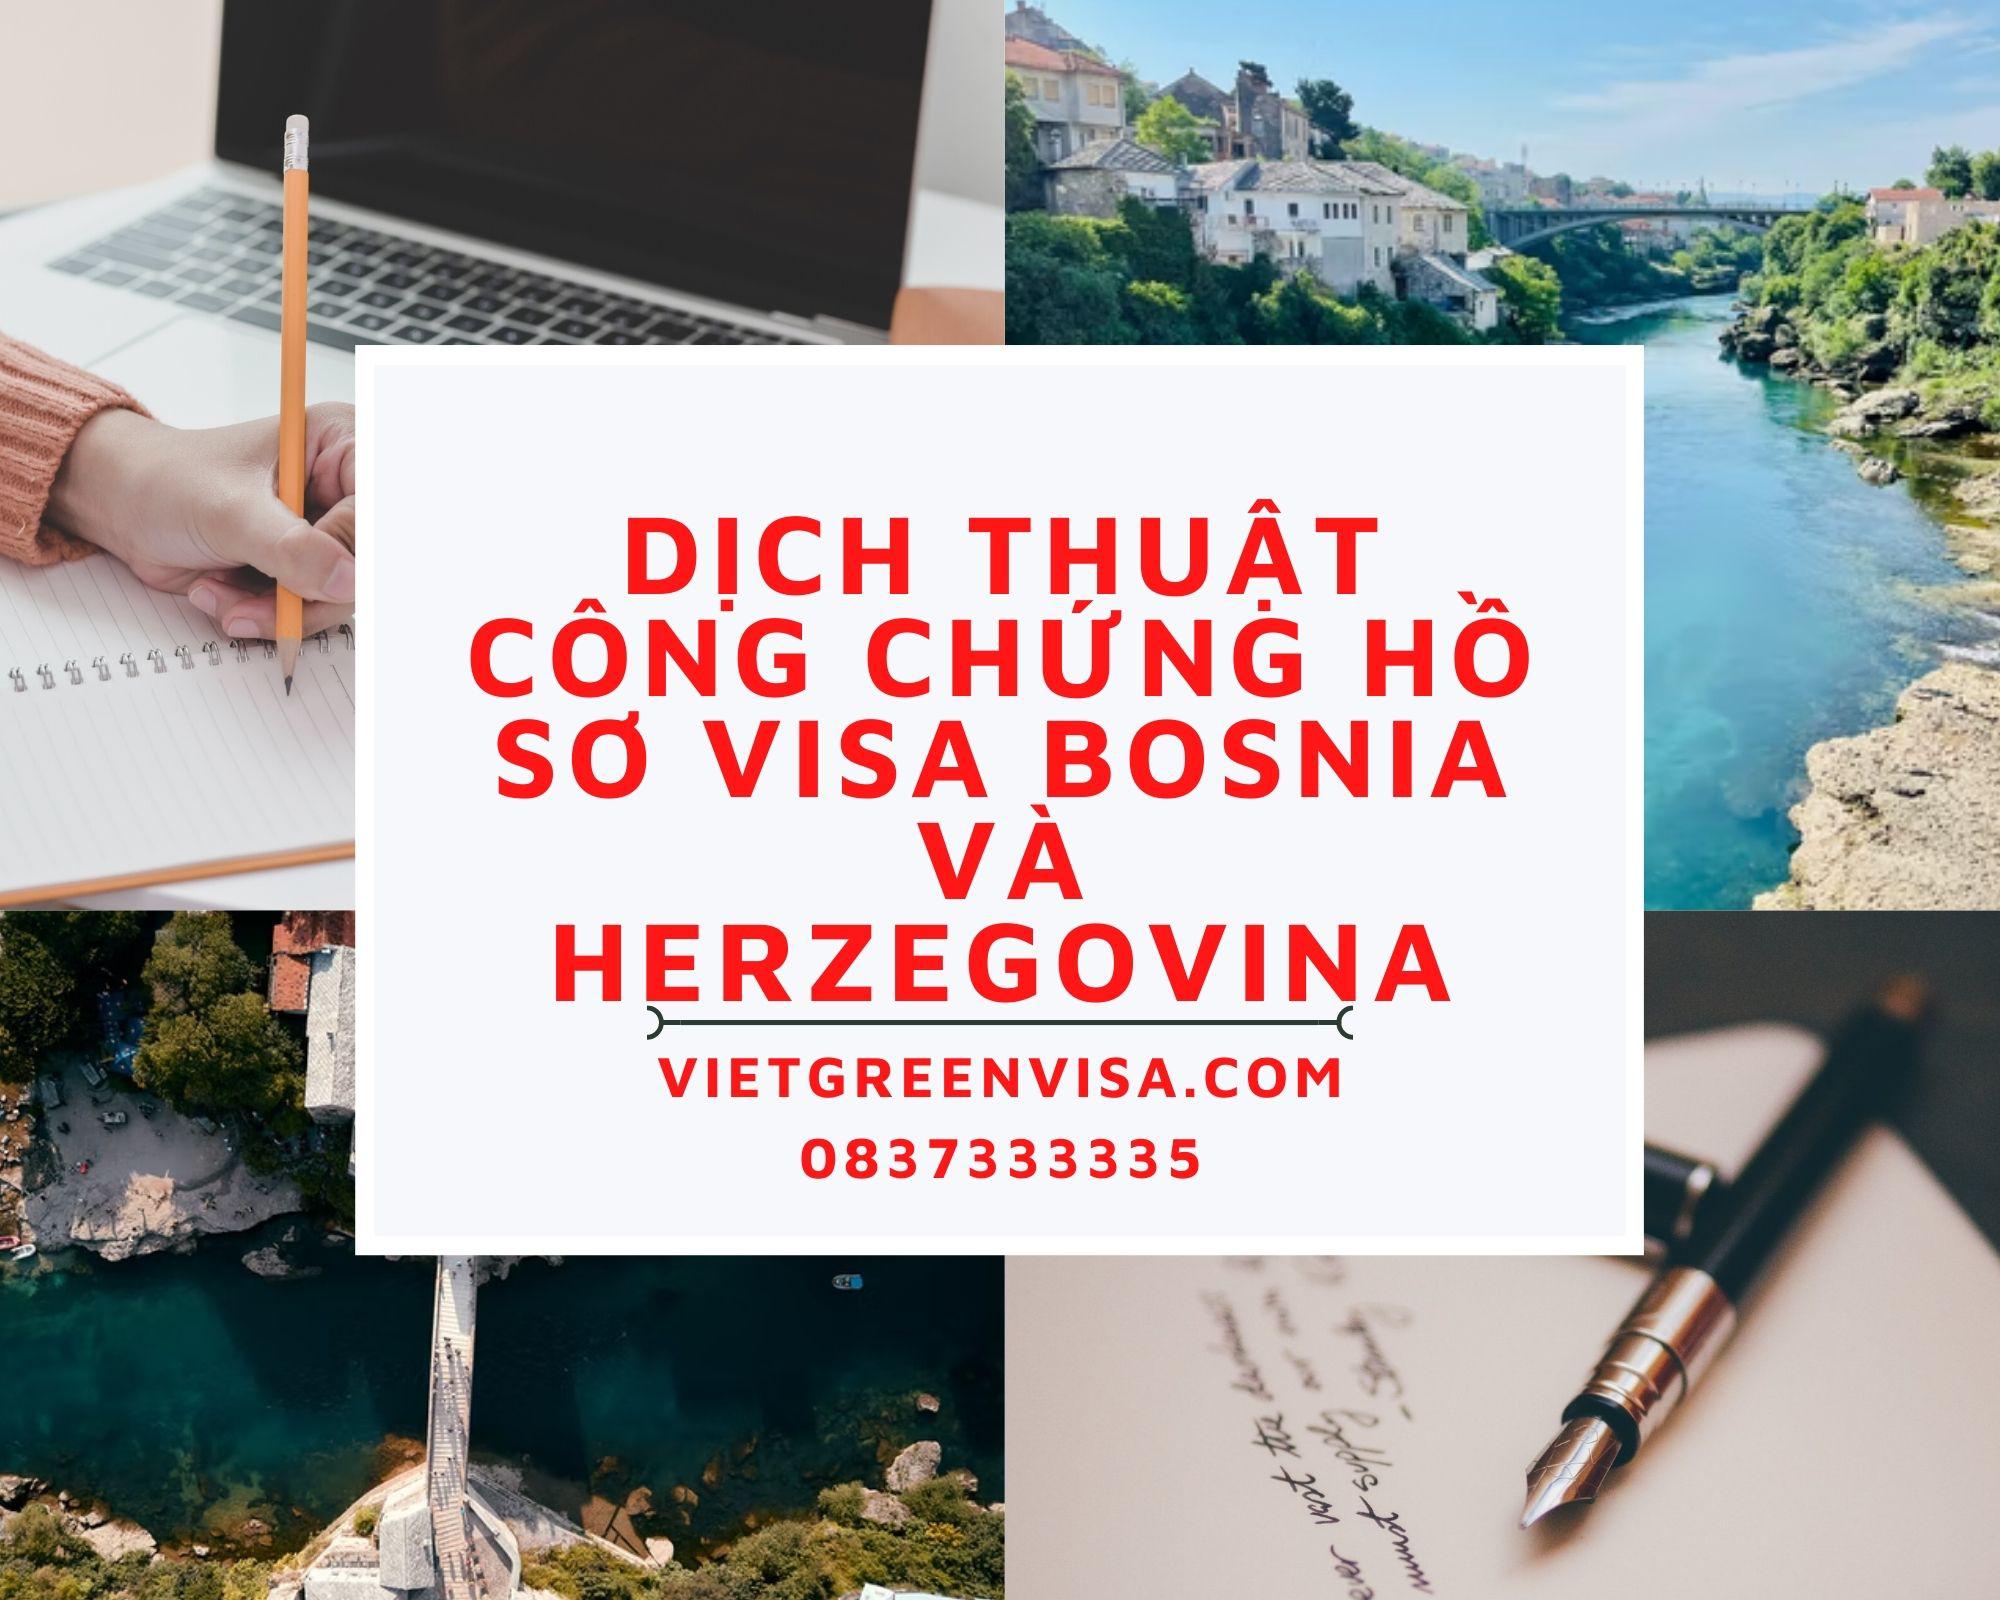 Dịch thuật công chứng hồ sơ visa du lịch, du học Bosnia và Herzegovina trọn gói